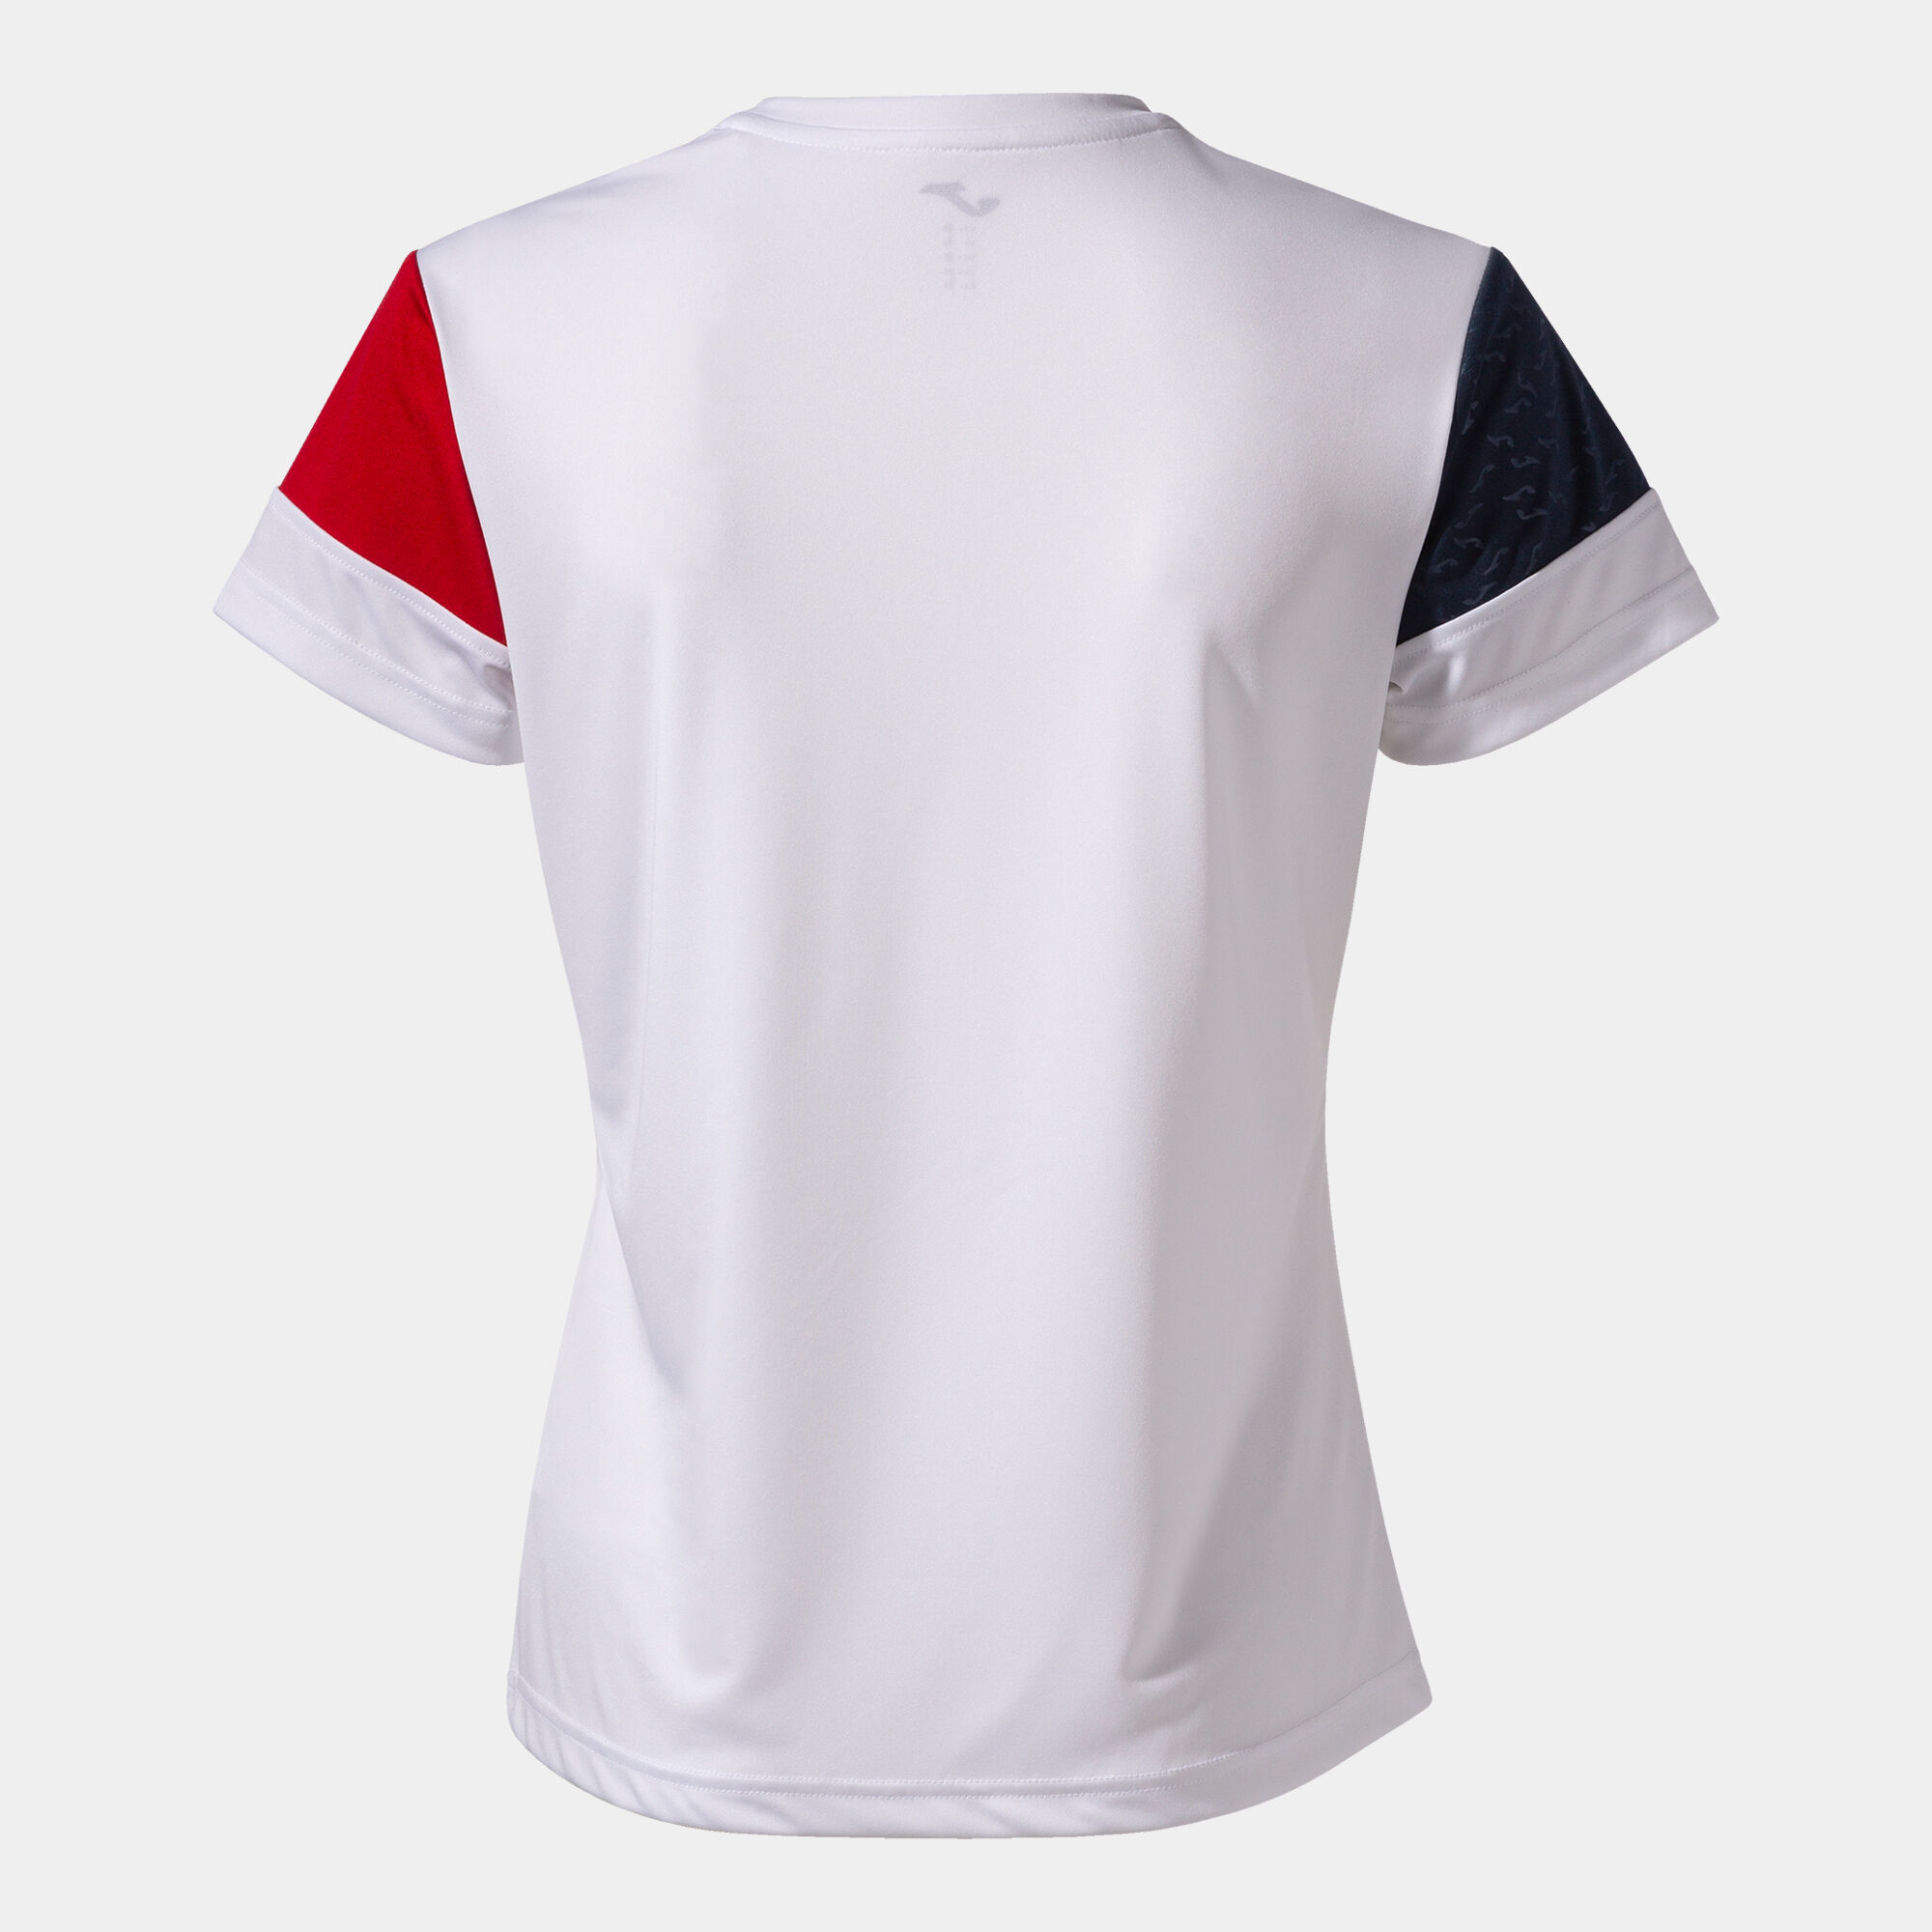 Camiseta manga corta mujer Crew V blanco rojo